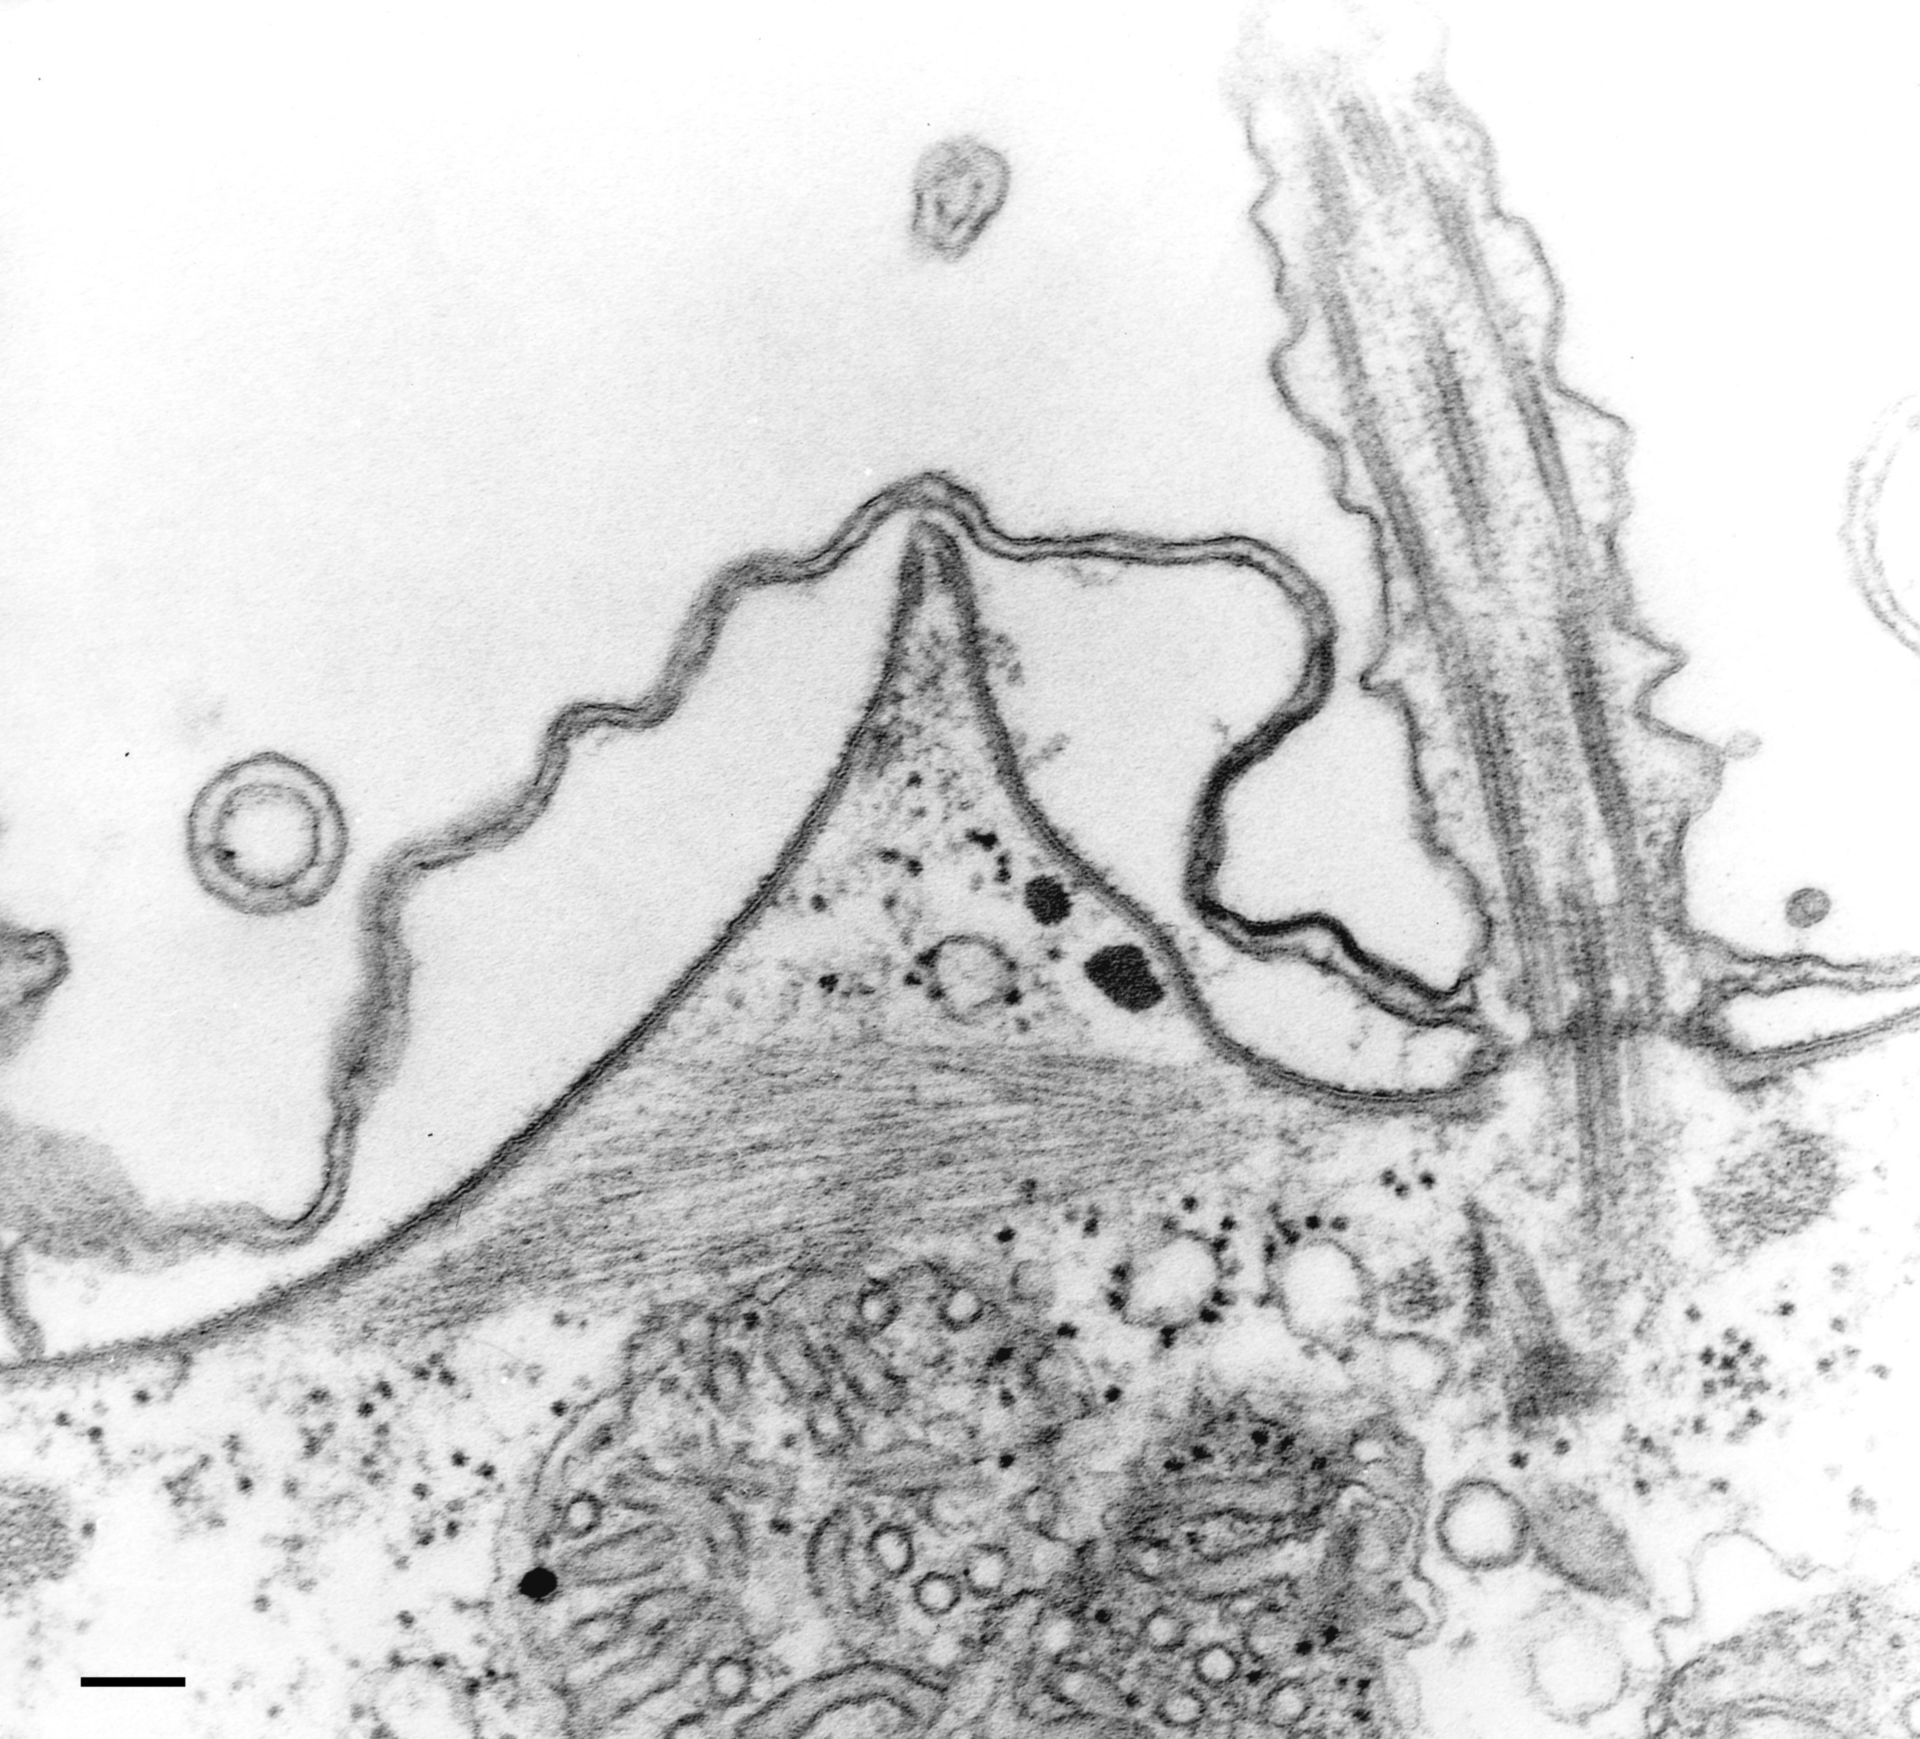 Paramecium multimicronucleatum (Cell cortex) - CIL:36597